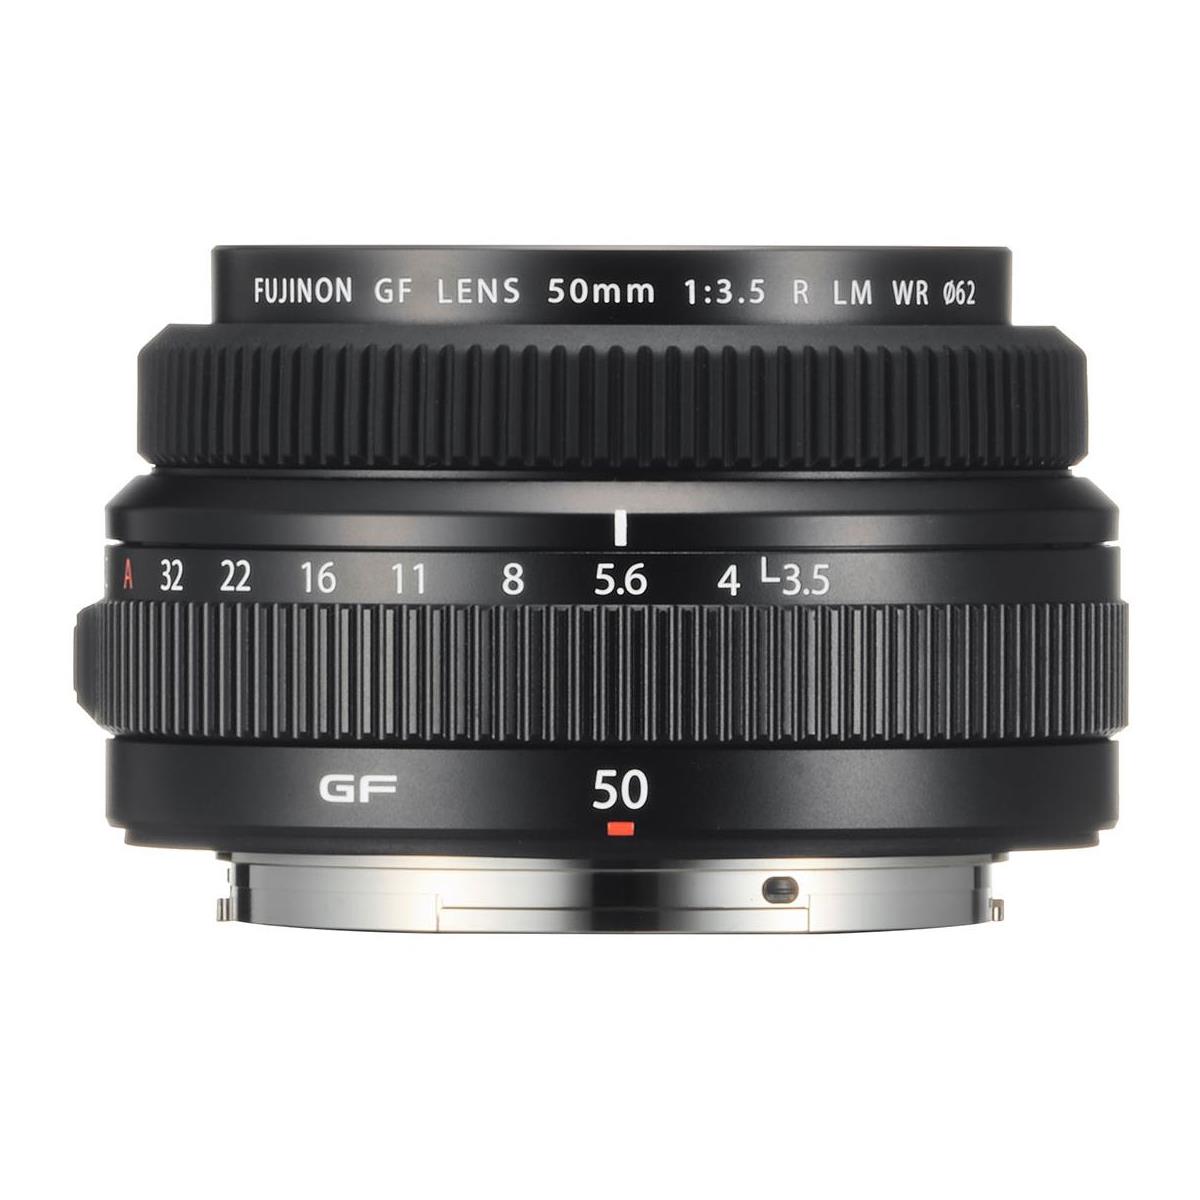 Fujifilm 50mm F3.5 GF R LM WR Lens